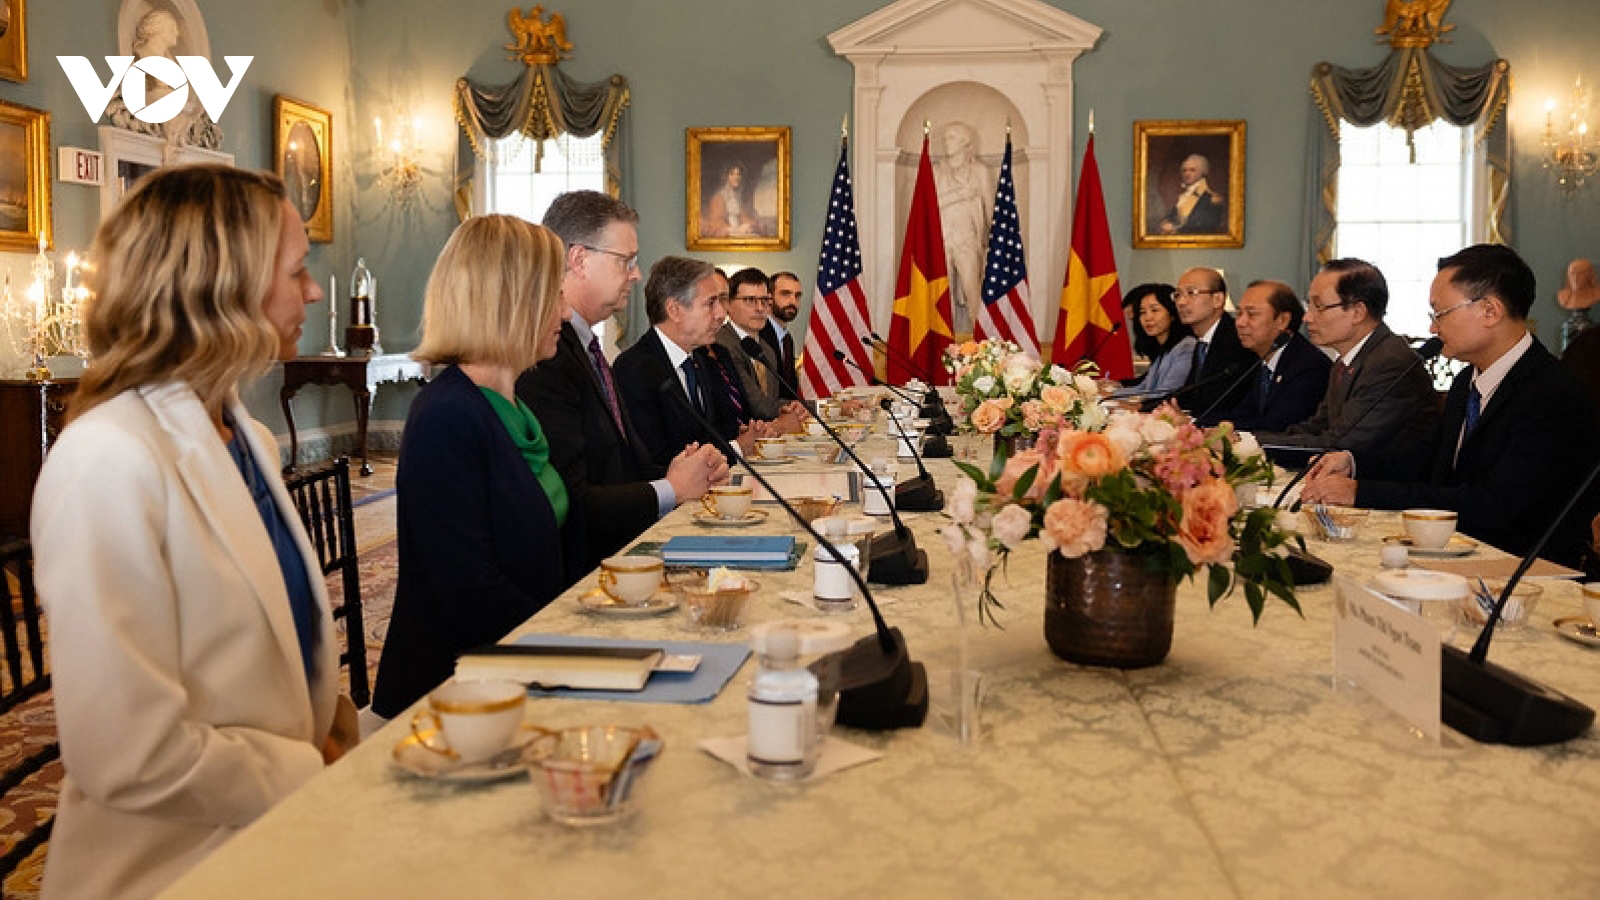 "Hoa Kỳ coi Việt Nam là một trong những đối tác then chốt trong khu vực"